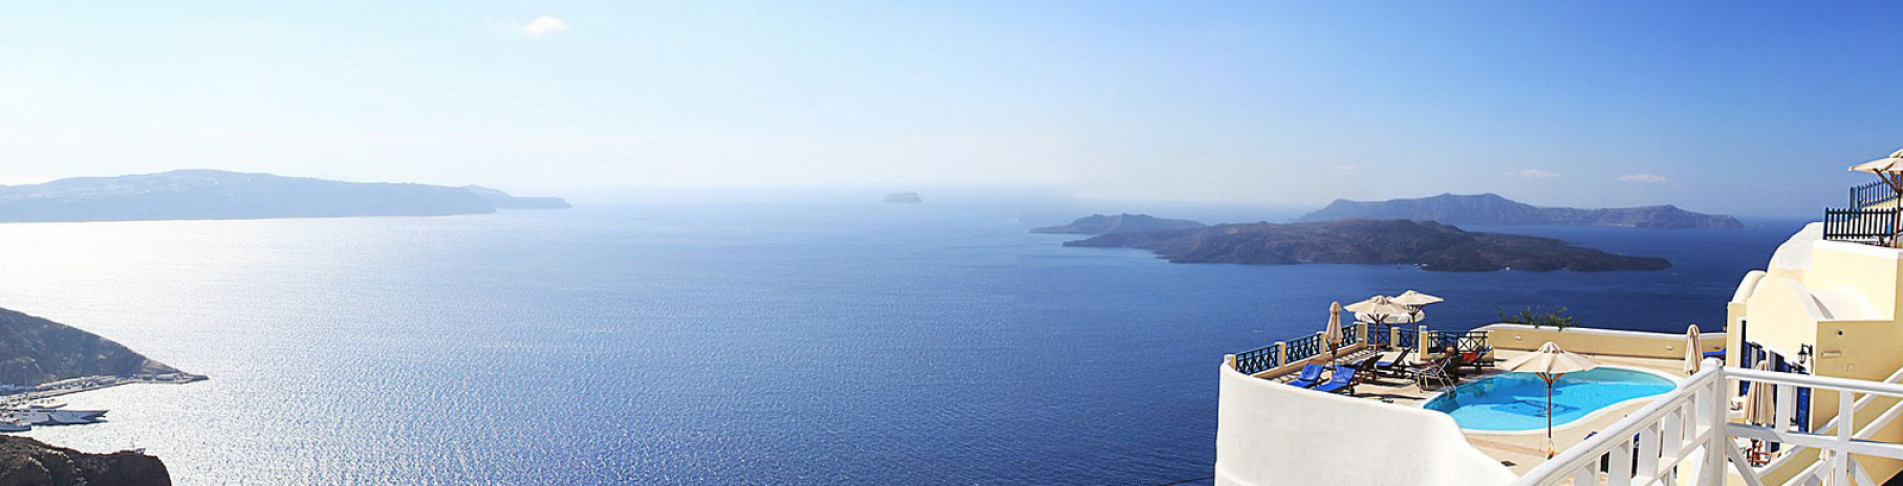 Santorini Urlaub buchen und ans Mittelmeer reisen